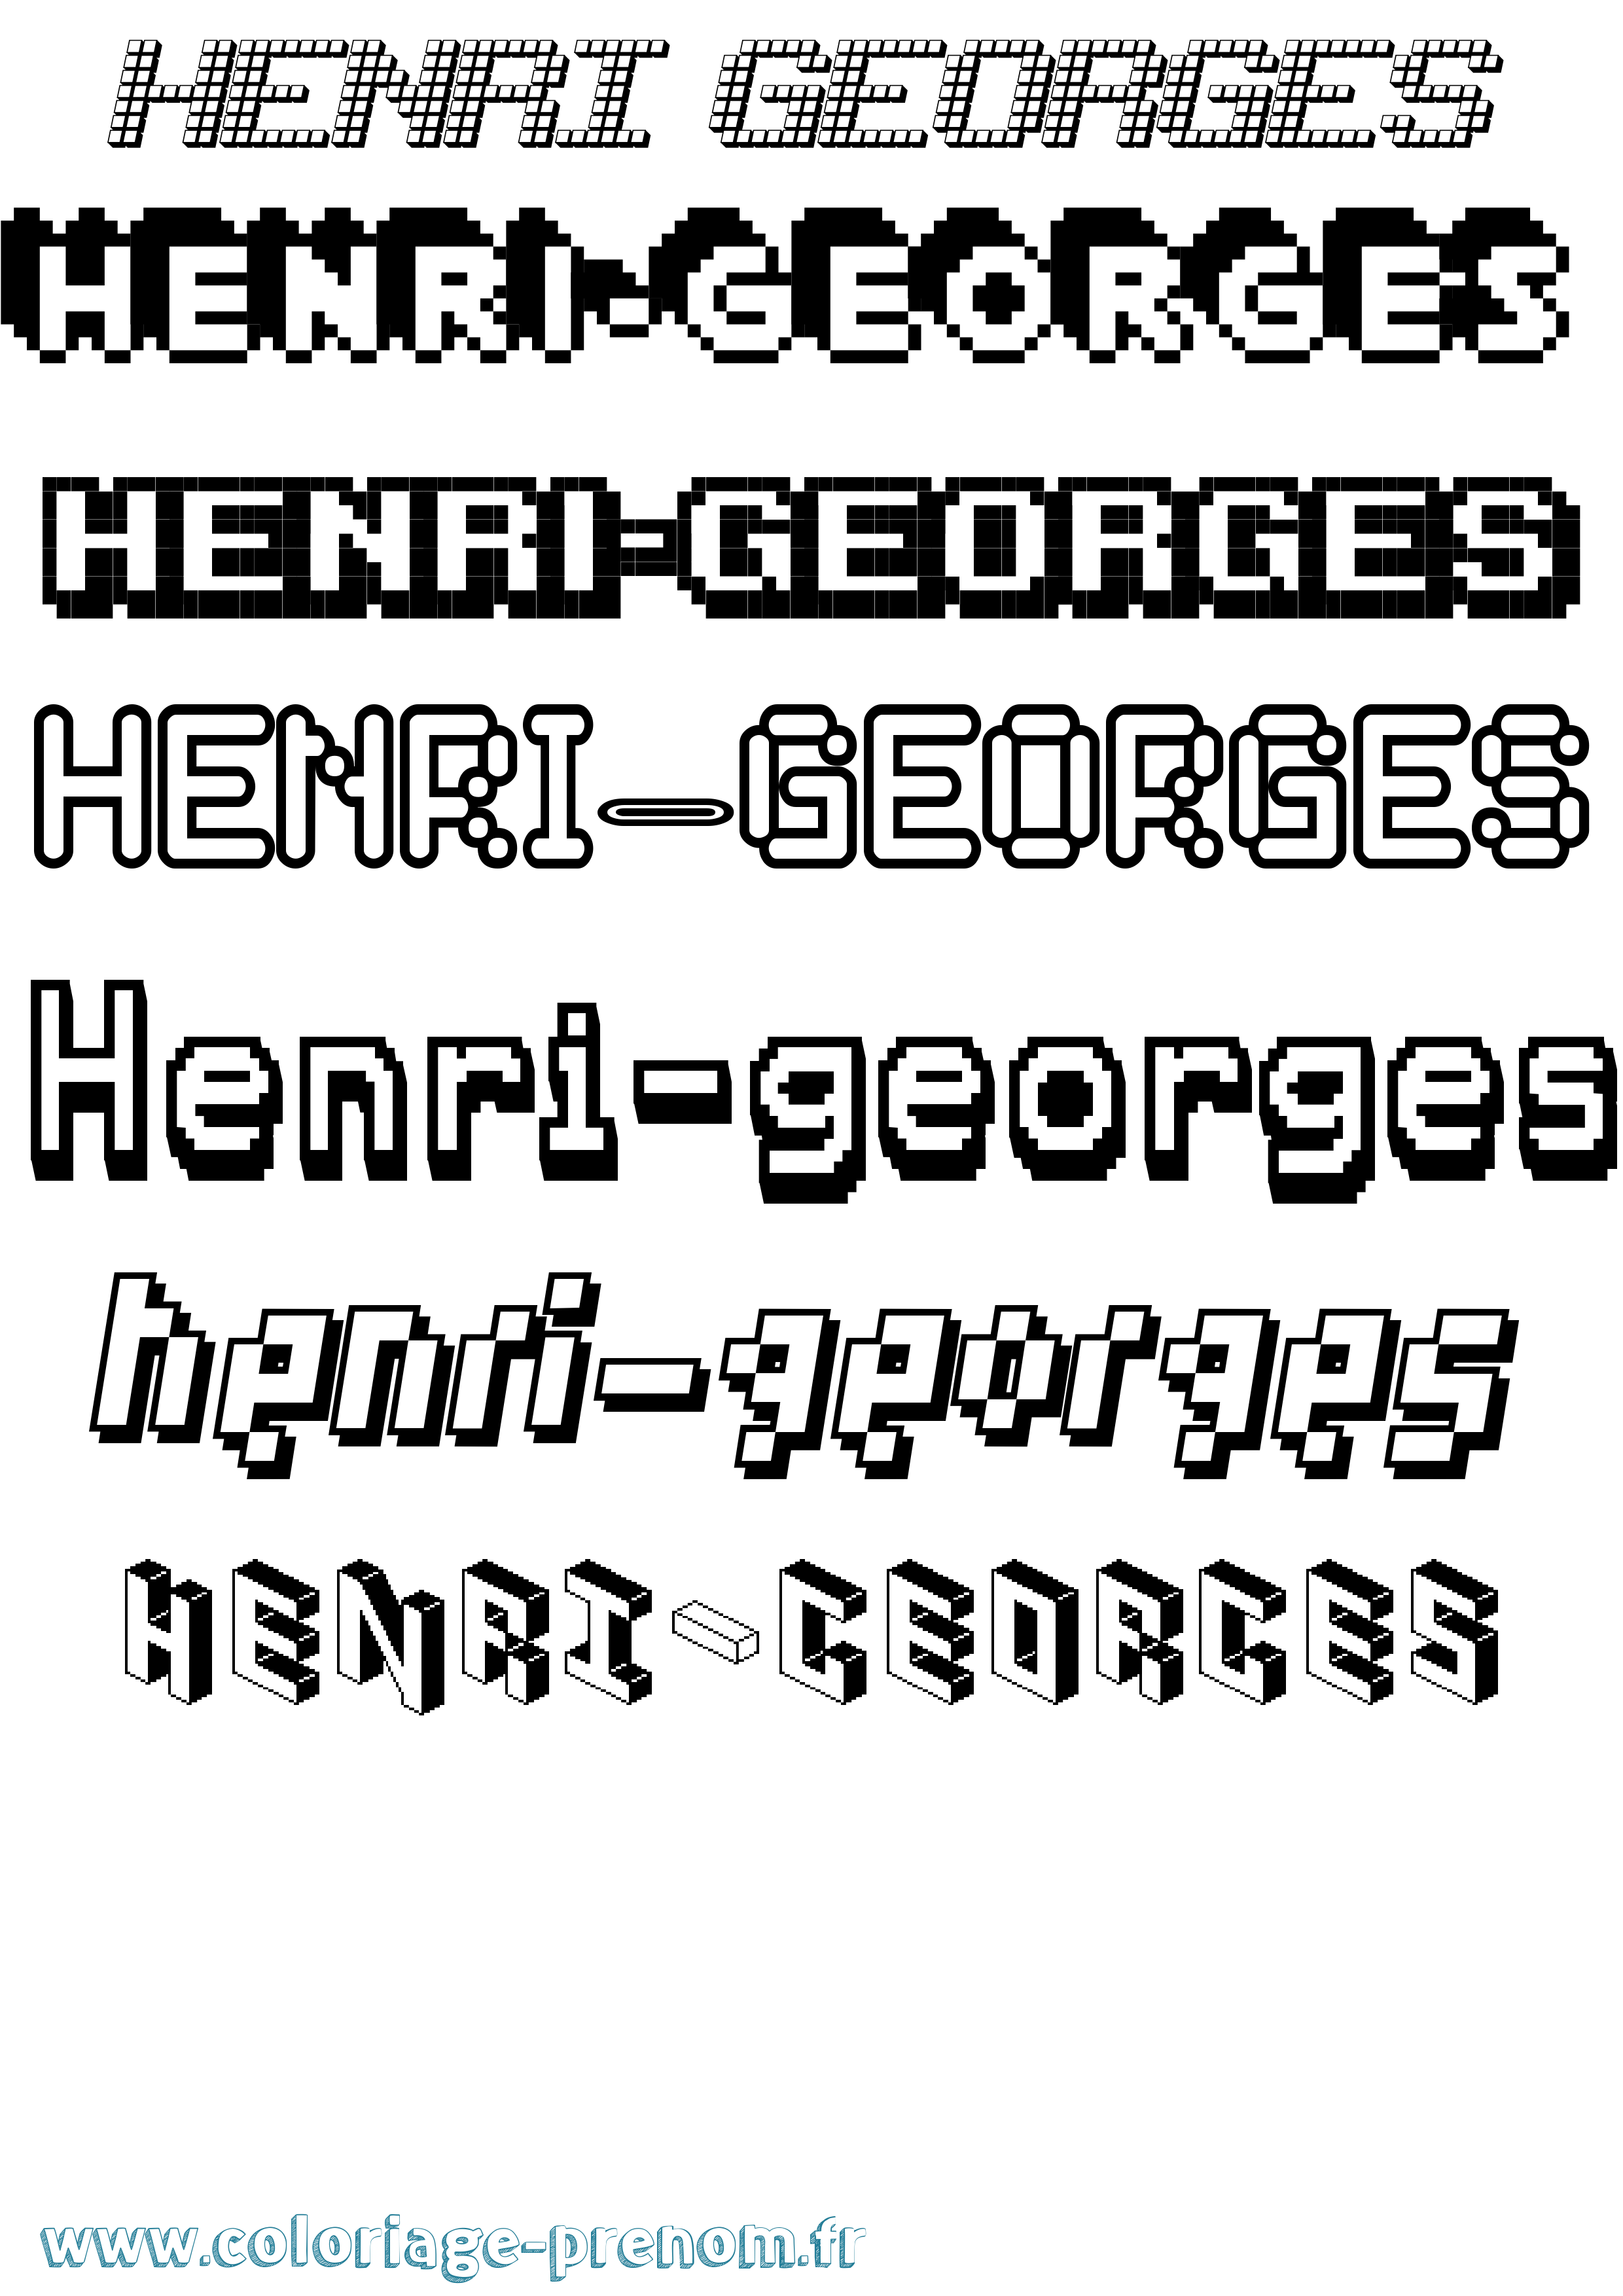 Coloriage prénom Henri-Georges Pixel